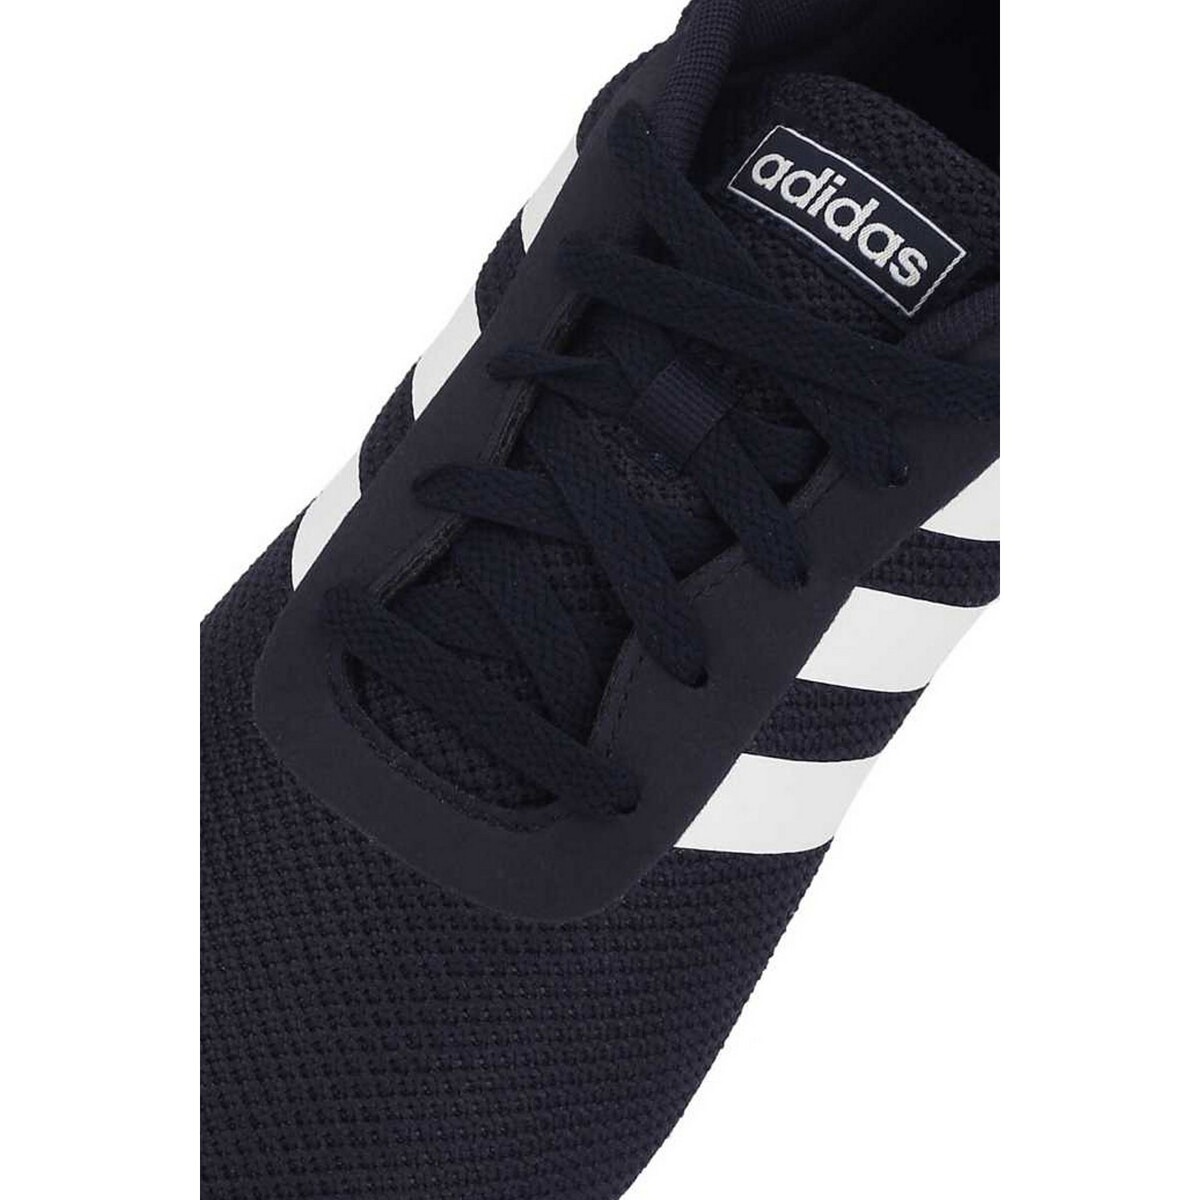 Adidas Mens Sports Shoes EG3281, 8